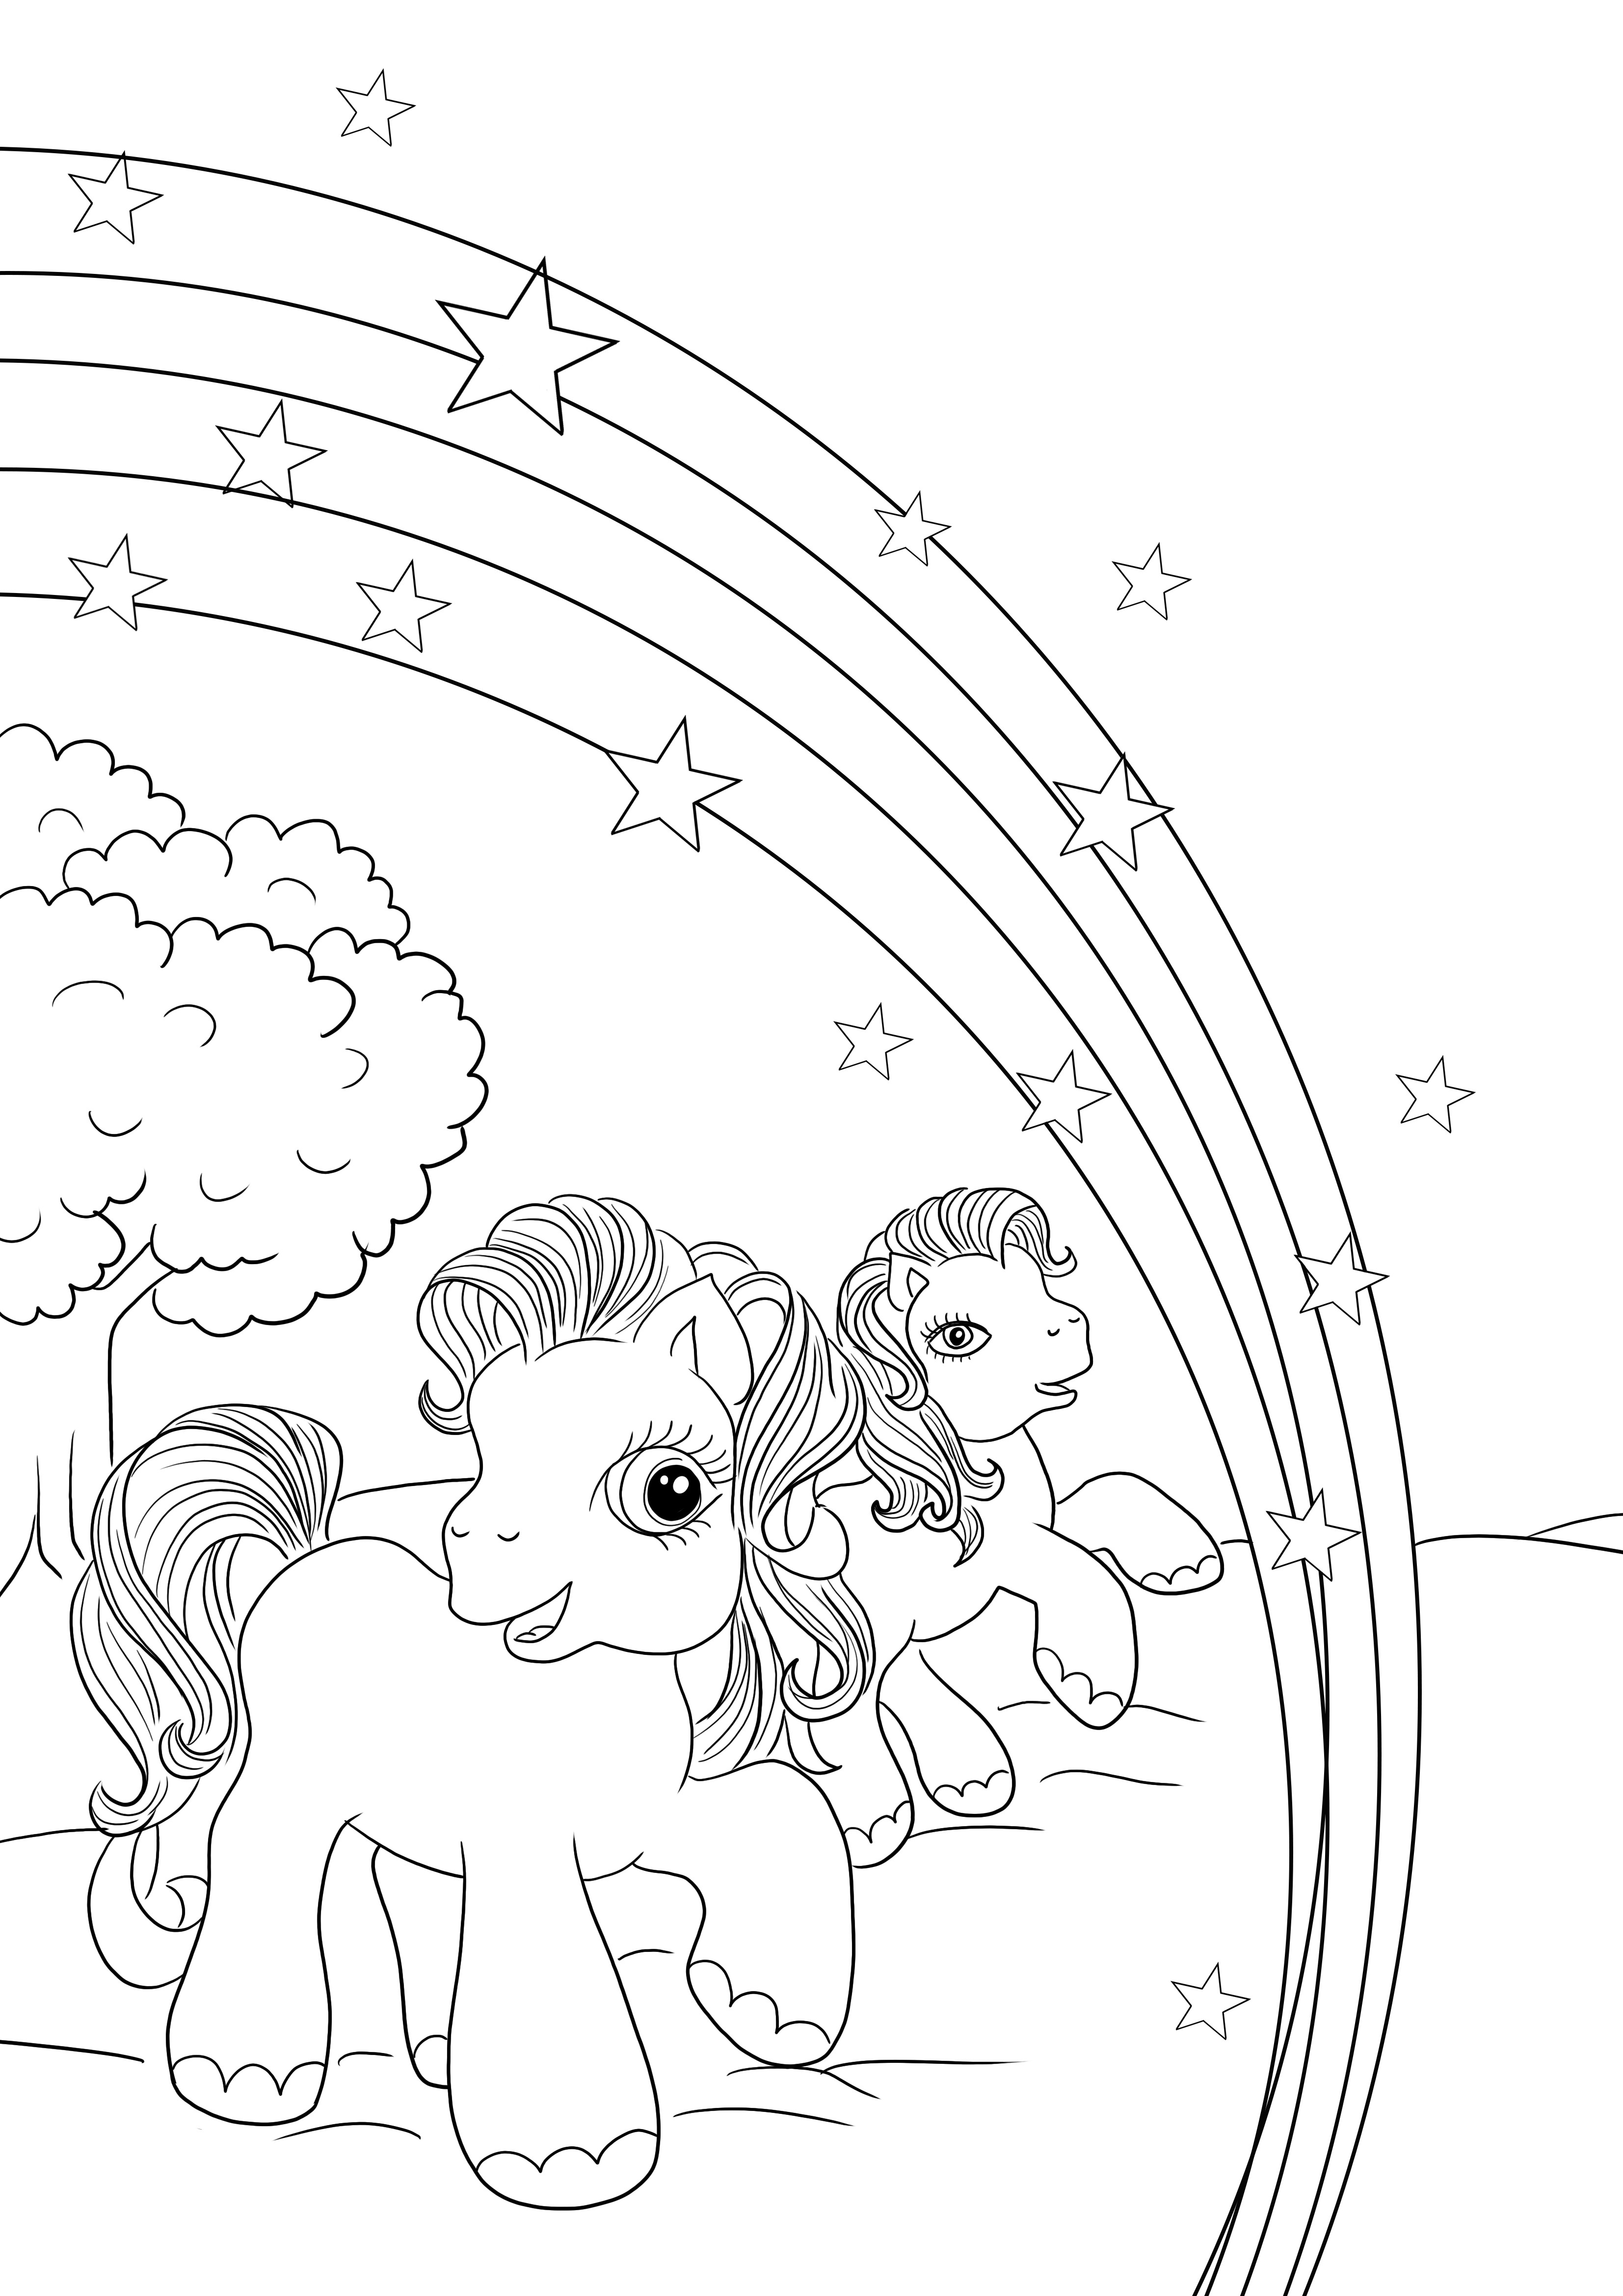 Simpatici e brillanti Little Pony da colorare e da scaricare gratuitamente